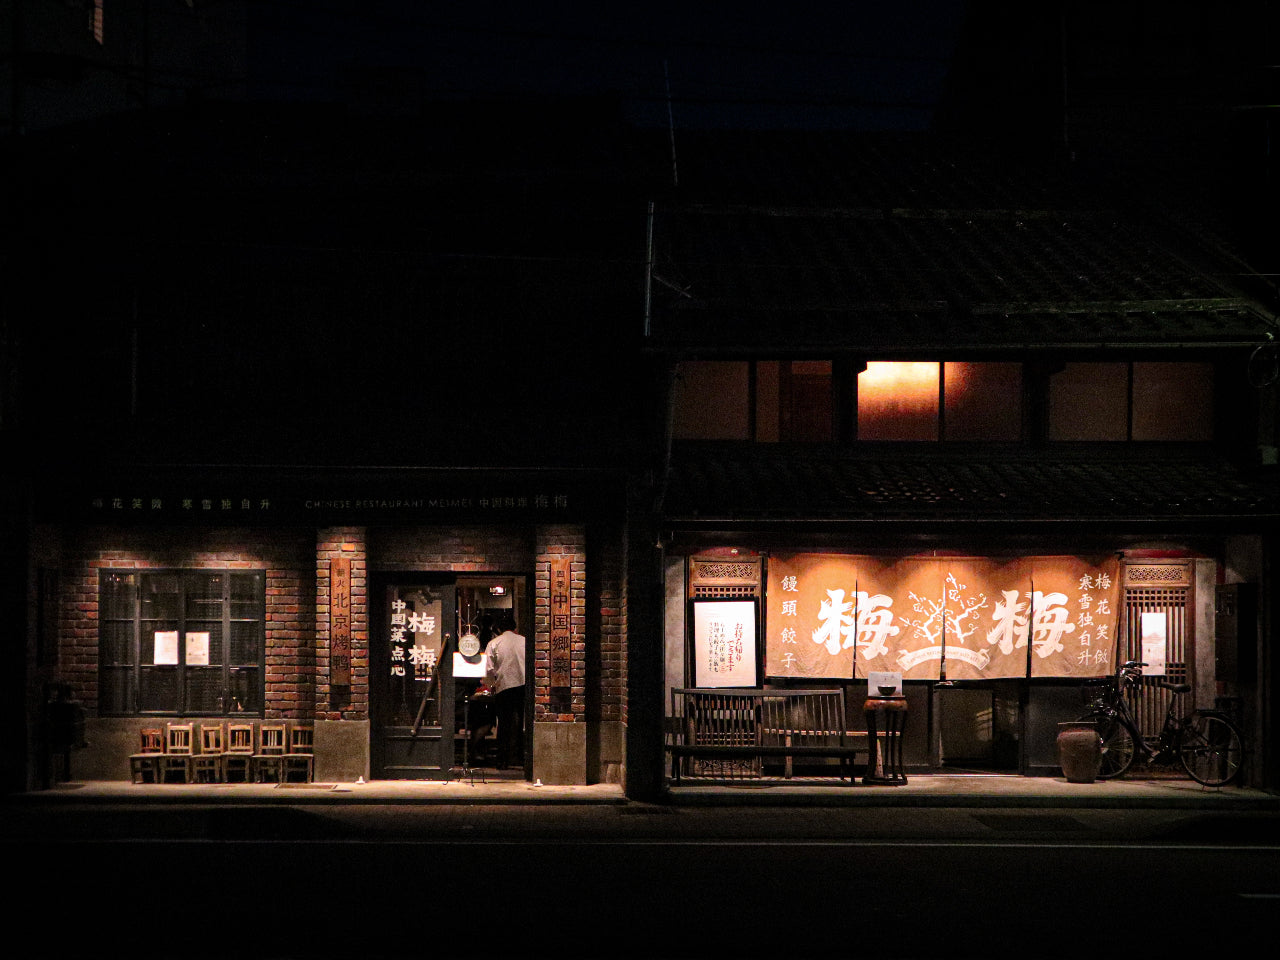 Shinise: A Japanese Long-Established Business